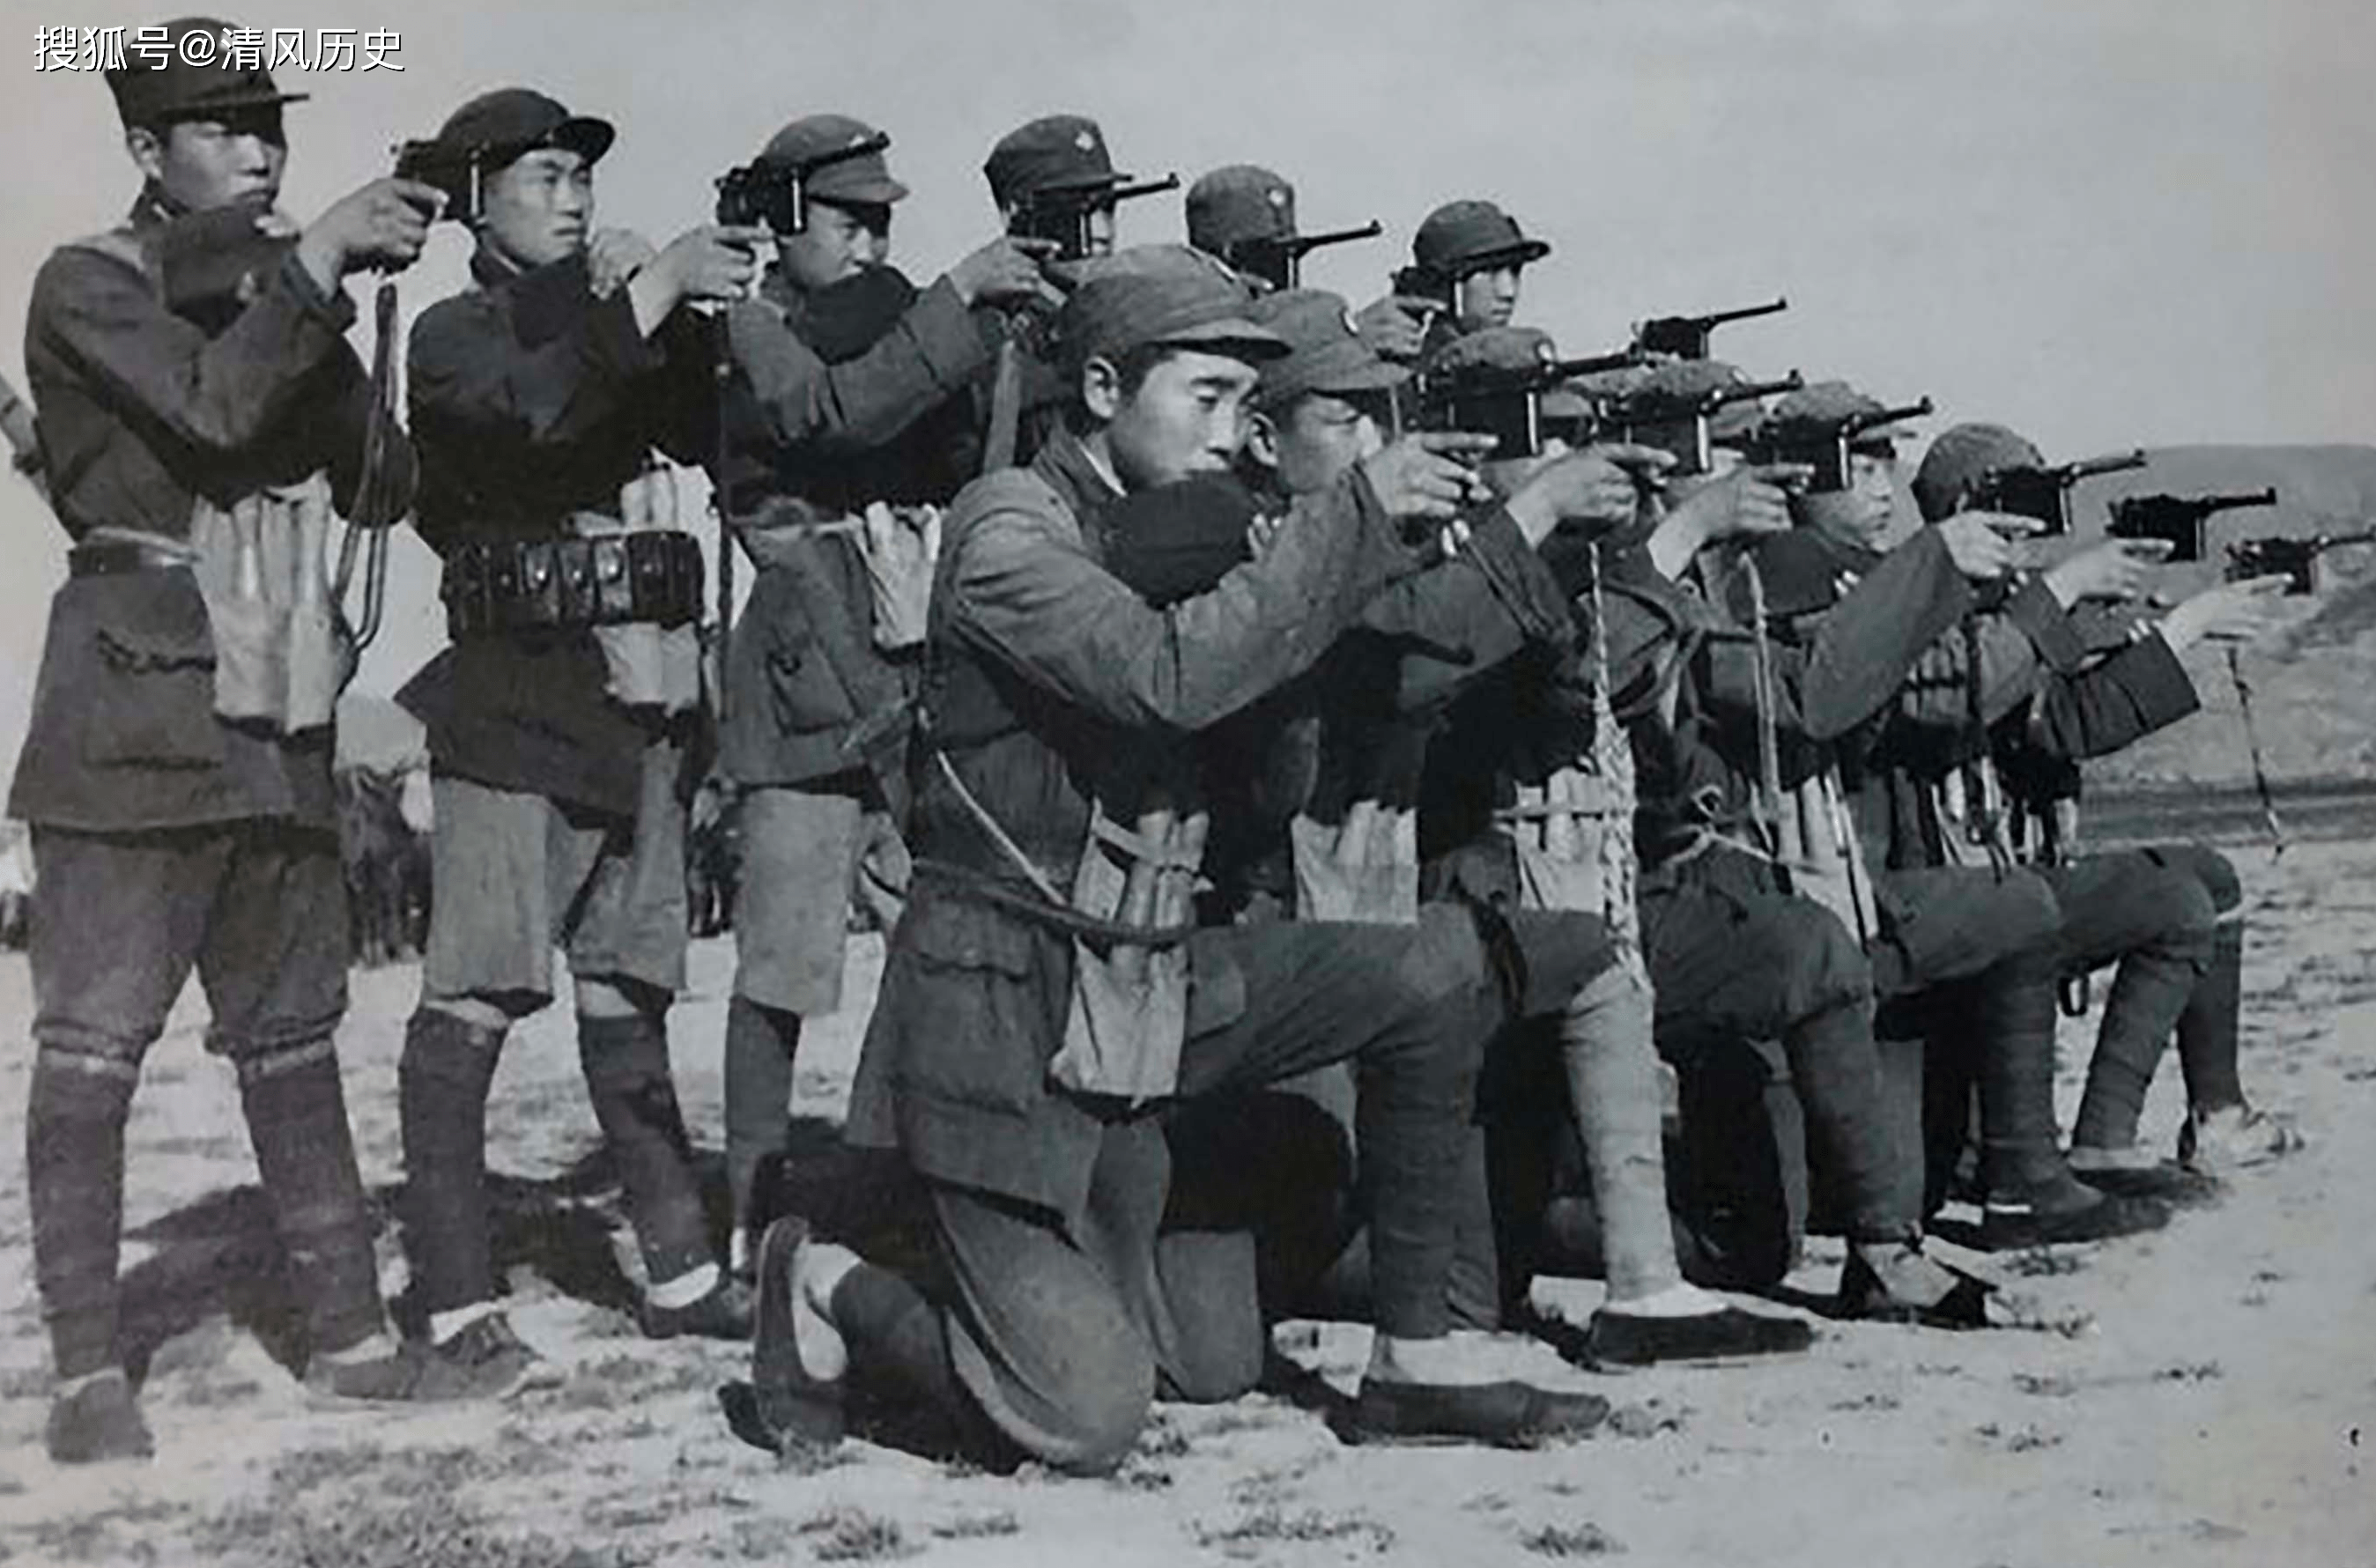 原创珍贵的抗日战争照片日本士兵装备精良中国士兵还拿着火绳枪